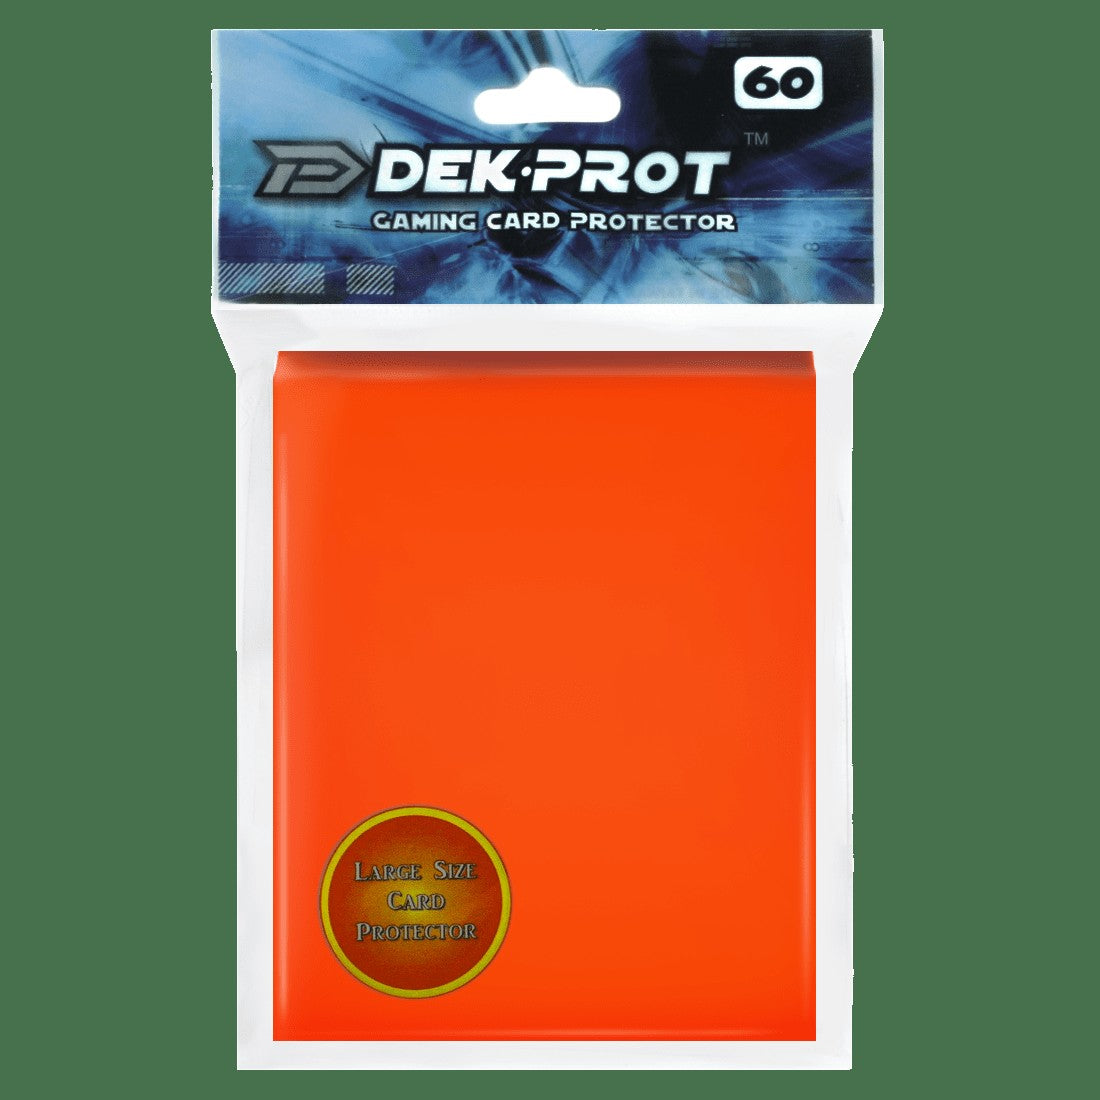 Dek Prot Standard Sized Card Sleeves - Tulip Orange (60 Card Sleeves)